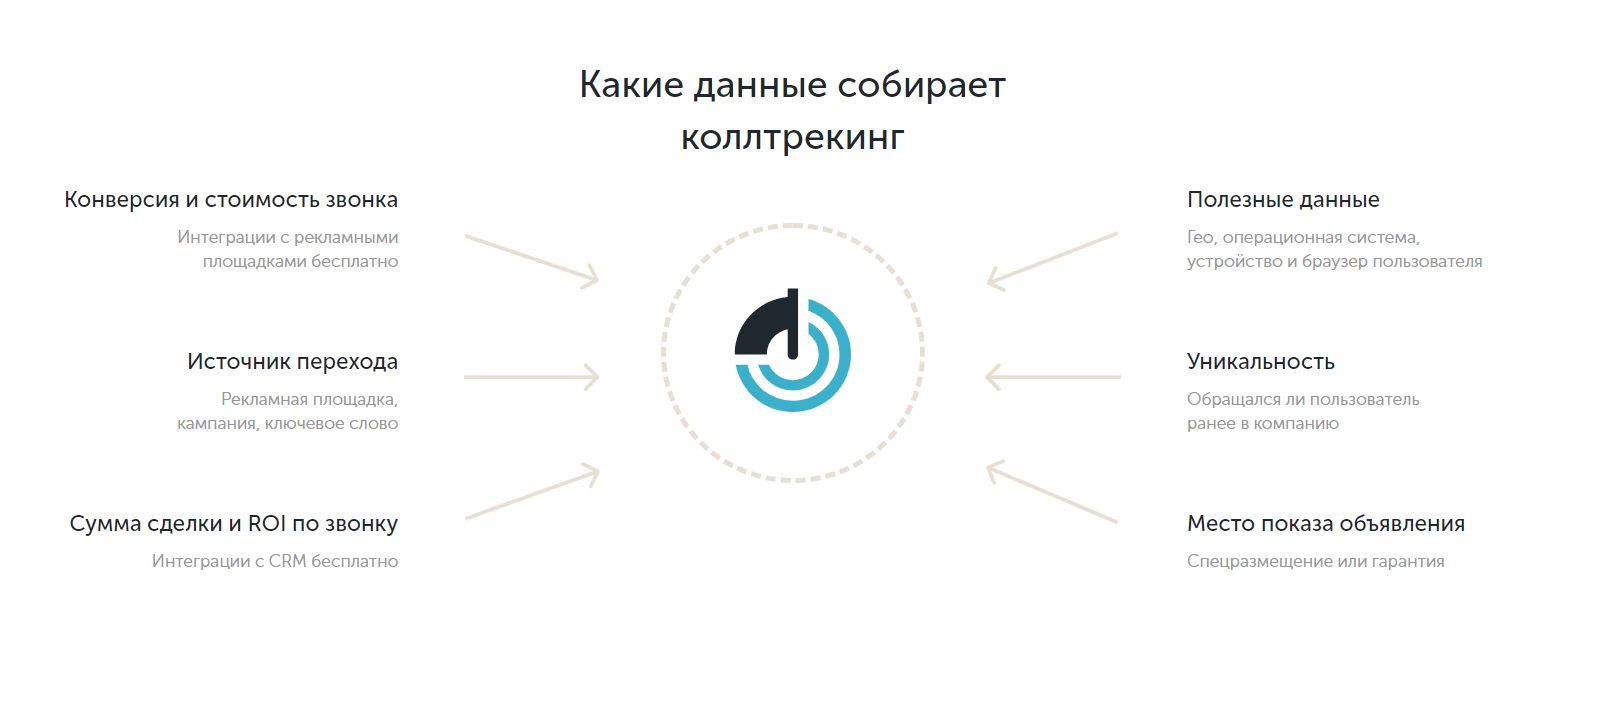 Получаем детальную картину эффективности переходов, которые заканчиваются звонками. Скриншот с calltouch.ru